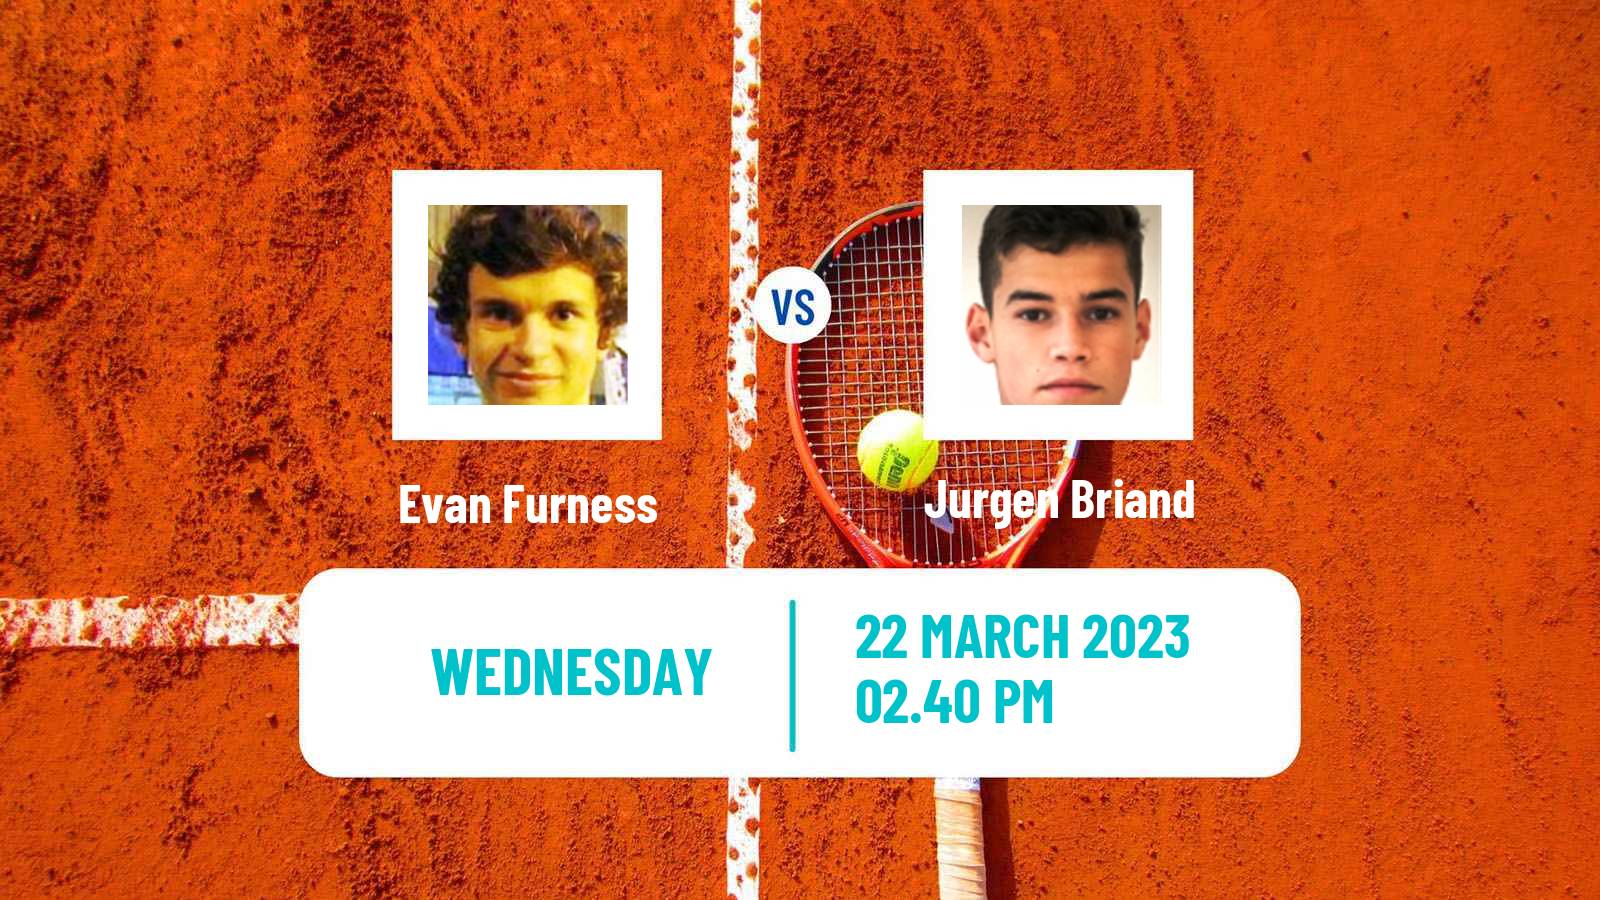 Tennis ATP Challenger Evan Furness - Jurgen Briand